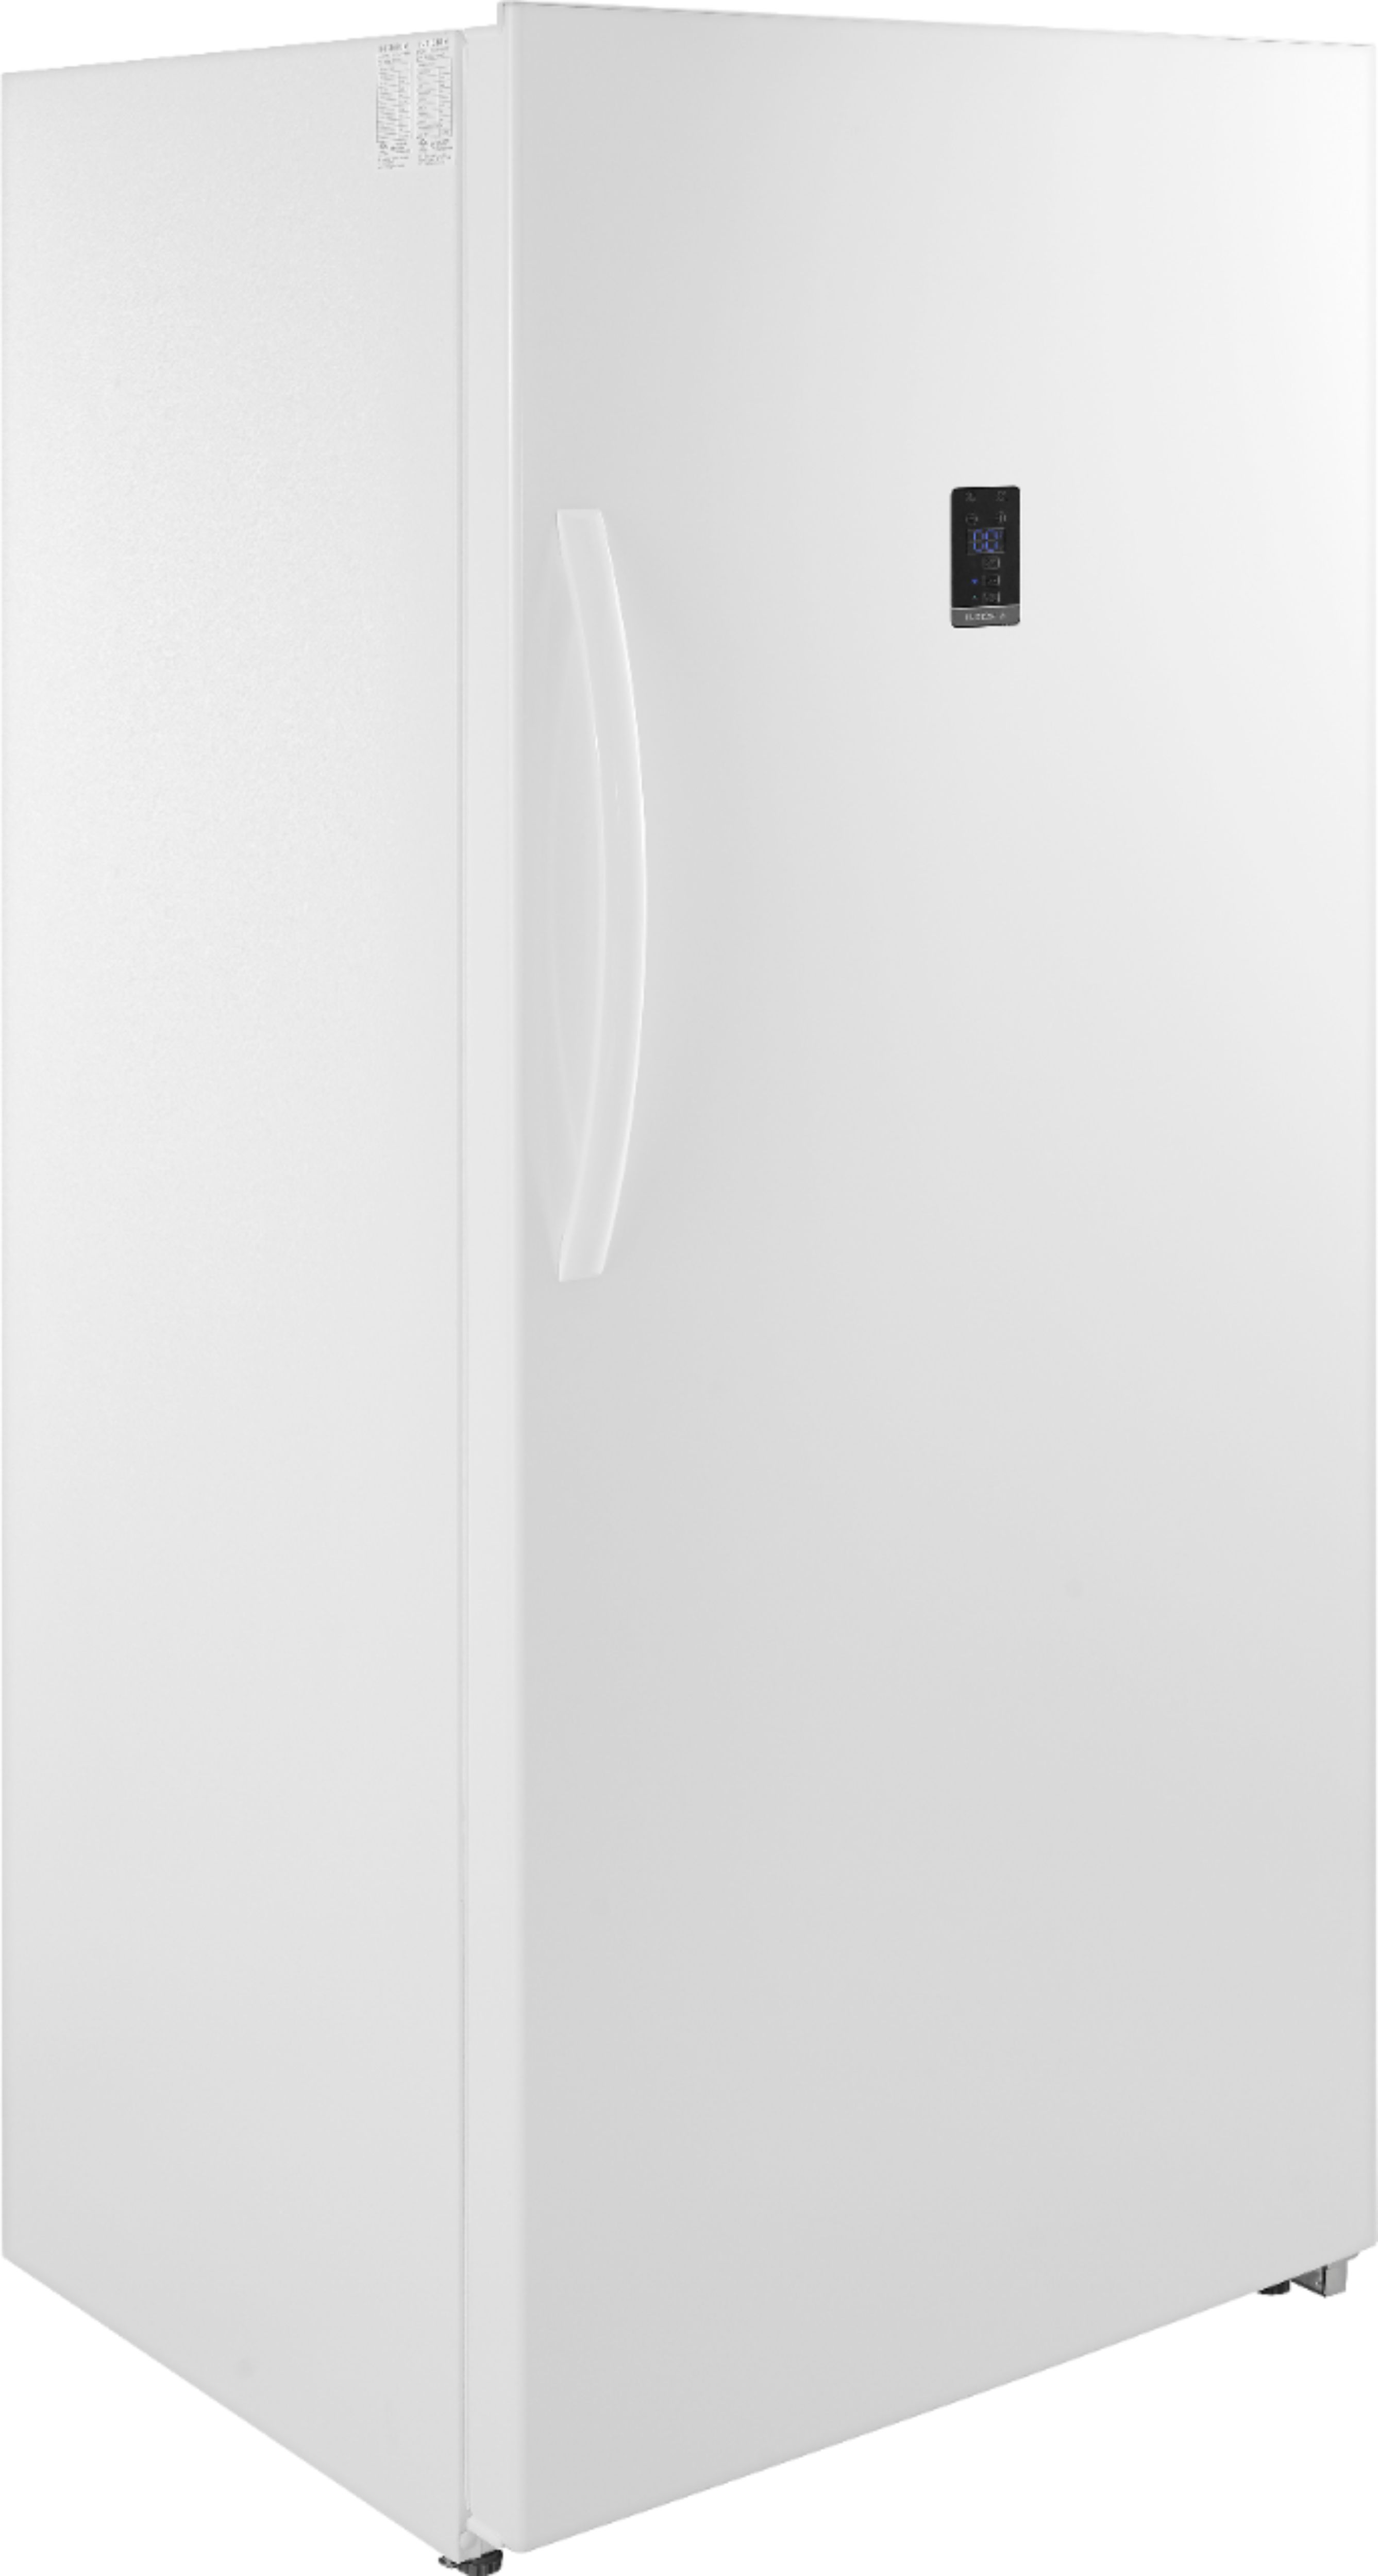 Customer Reviews: Insignia\u2122 21.0 Cu. Ft. Upright Convertible Freezer ...